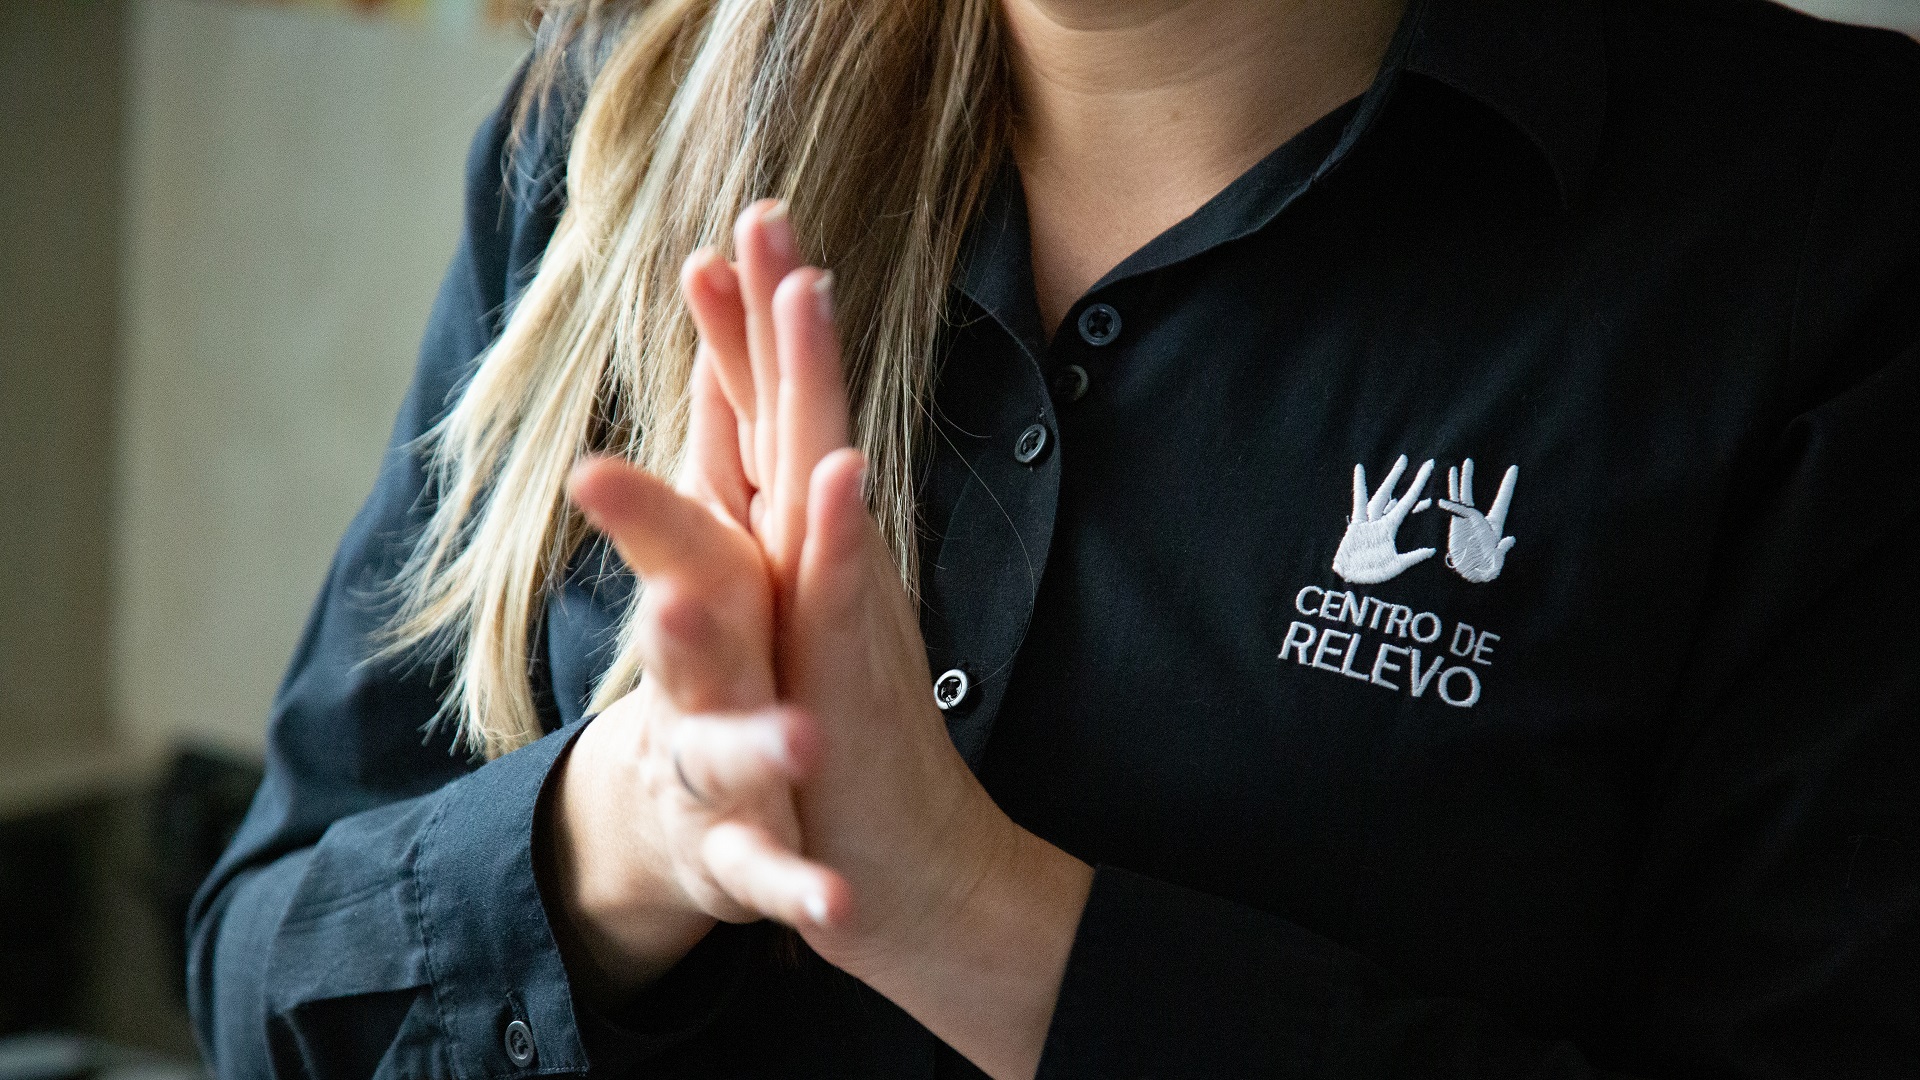 Fotografía: primer plan de manos haciendo señas